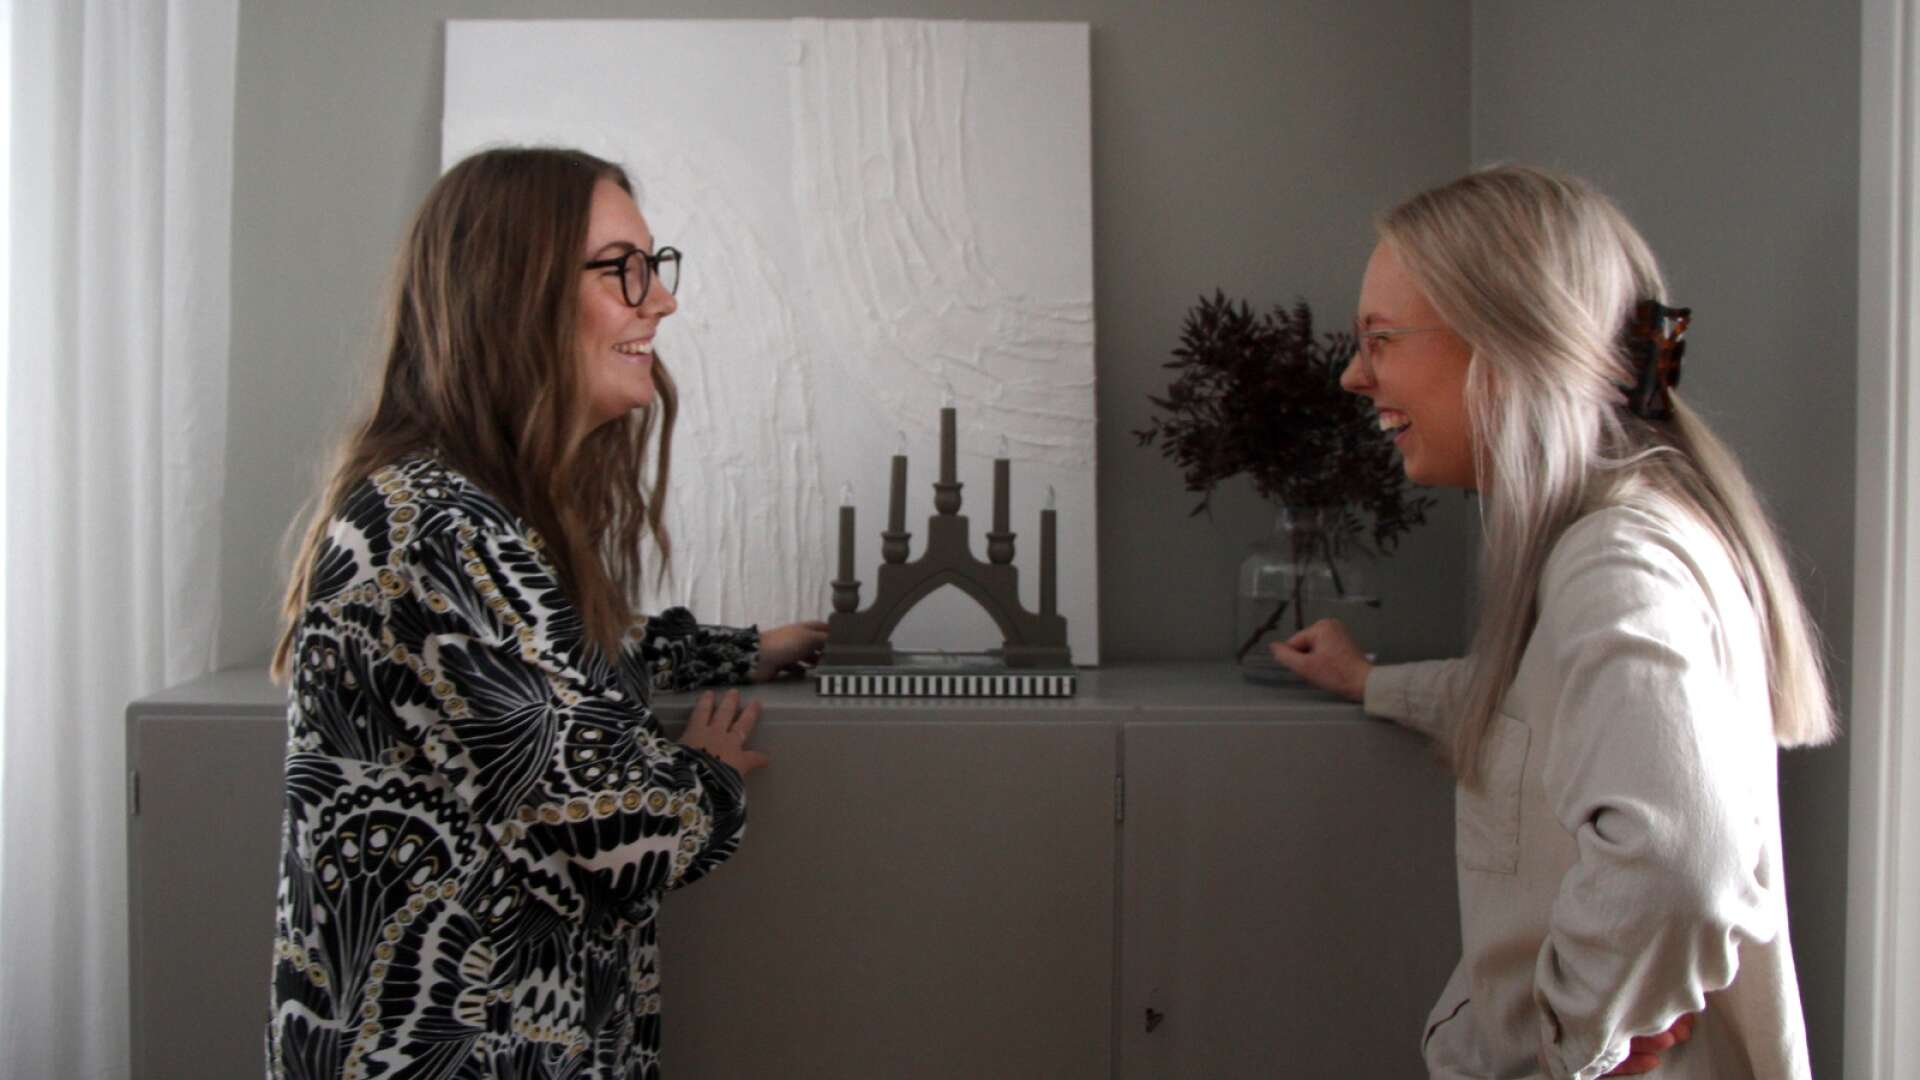 Systrarna Jessica och Jenny Widén har tillsammans startat inredningsföretag Studio Wester.